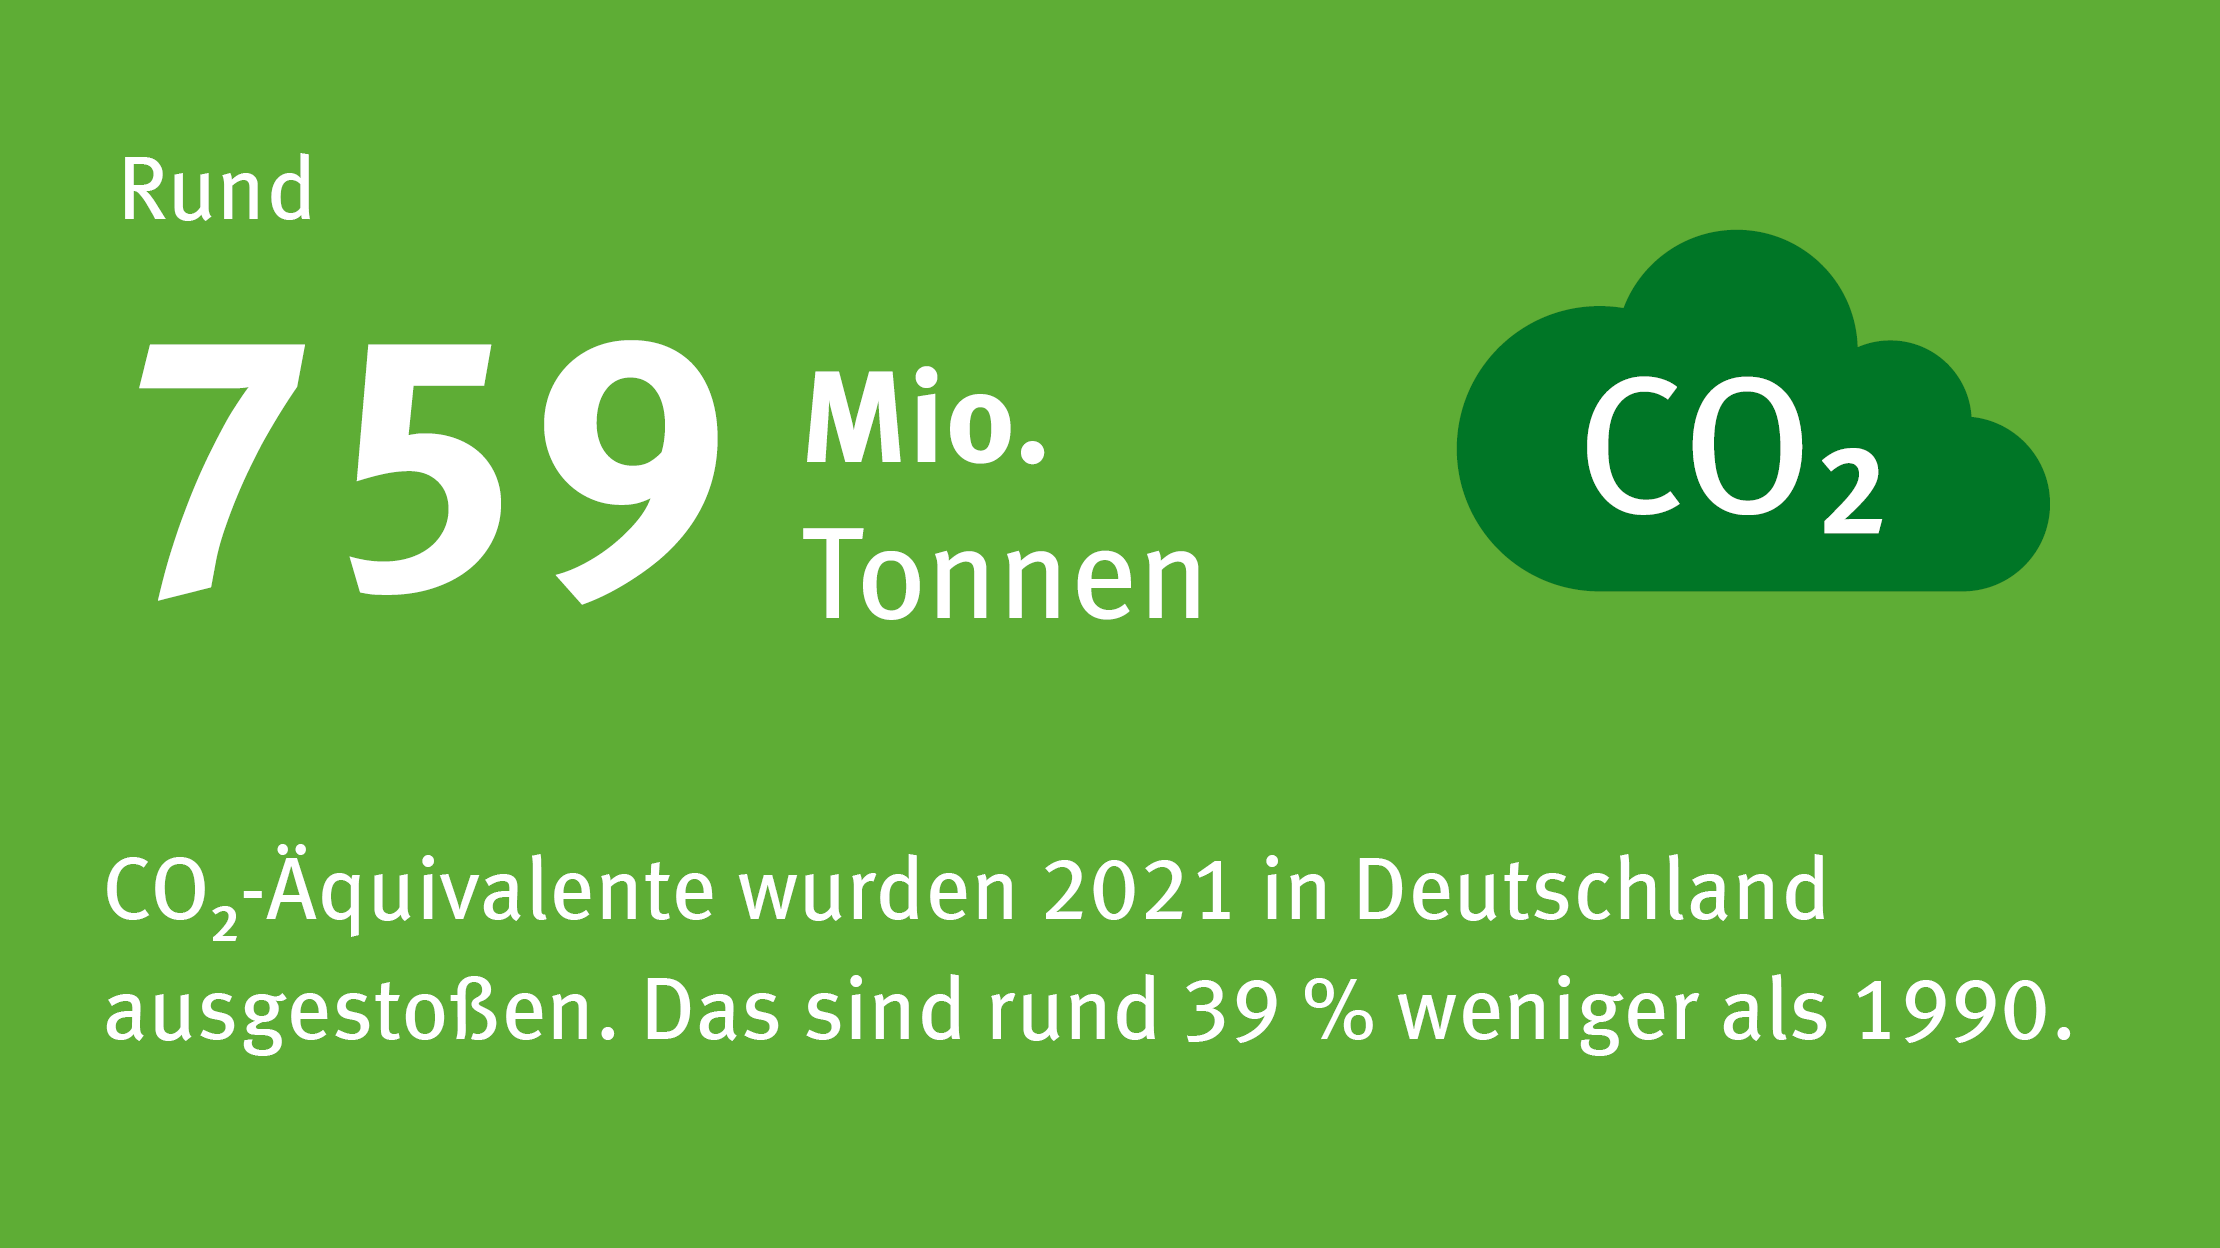 Circa 760 Millionen Tonnen Kohlenstoffdioxid-Äquivalente wurden 2021 in Deutschland ausgestoßen.